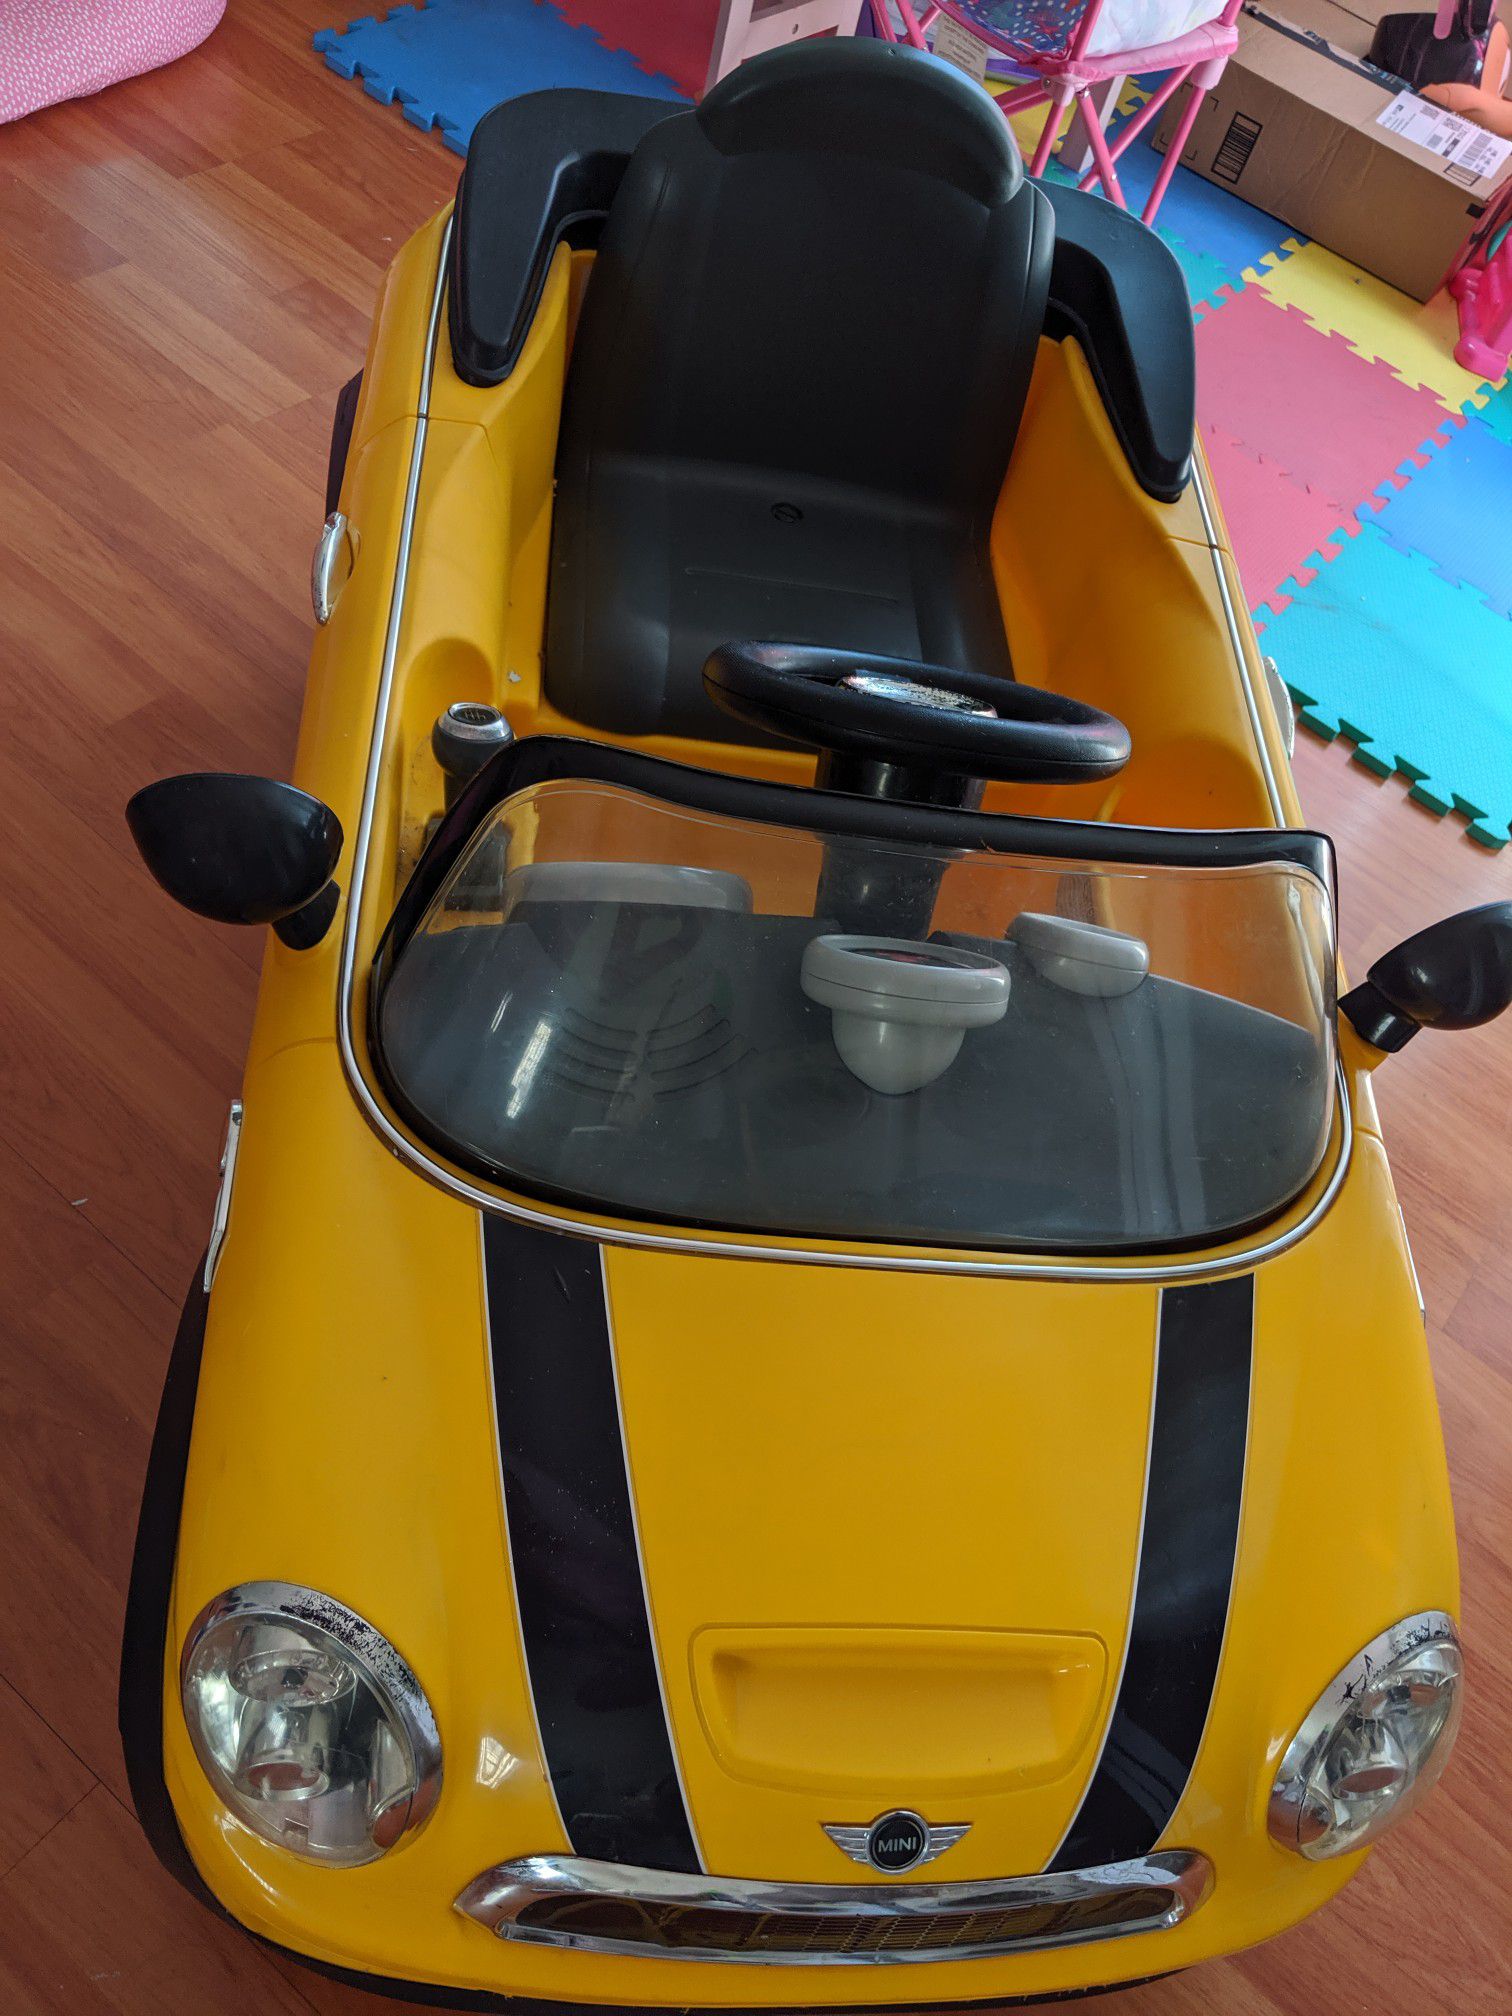 Kid toy car